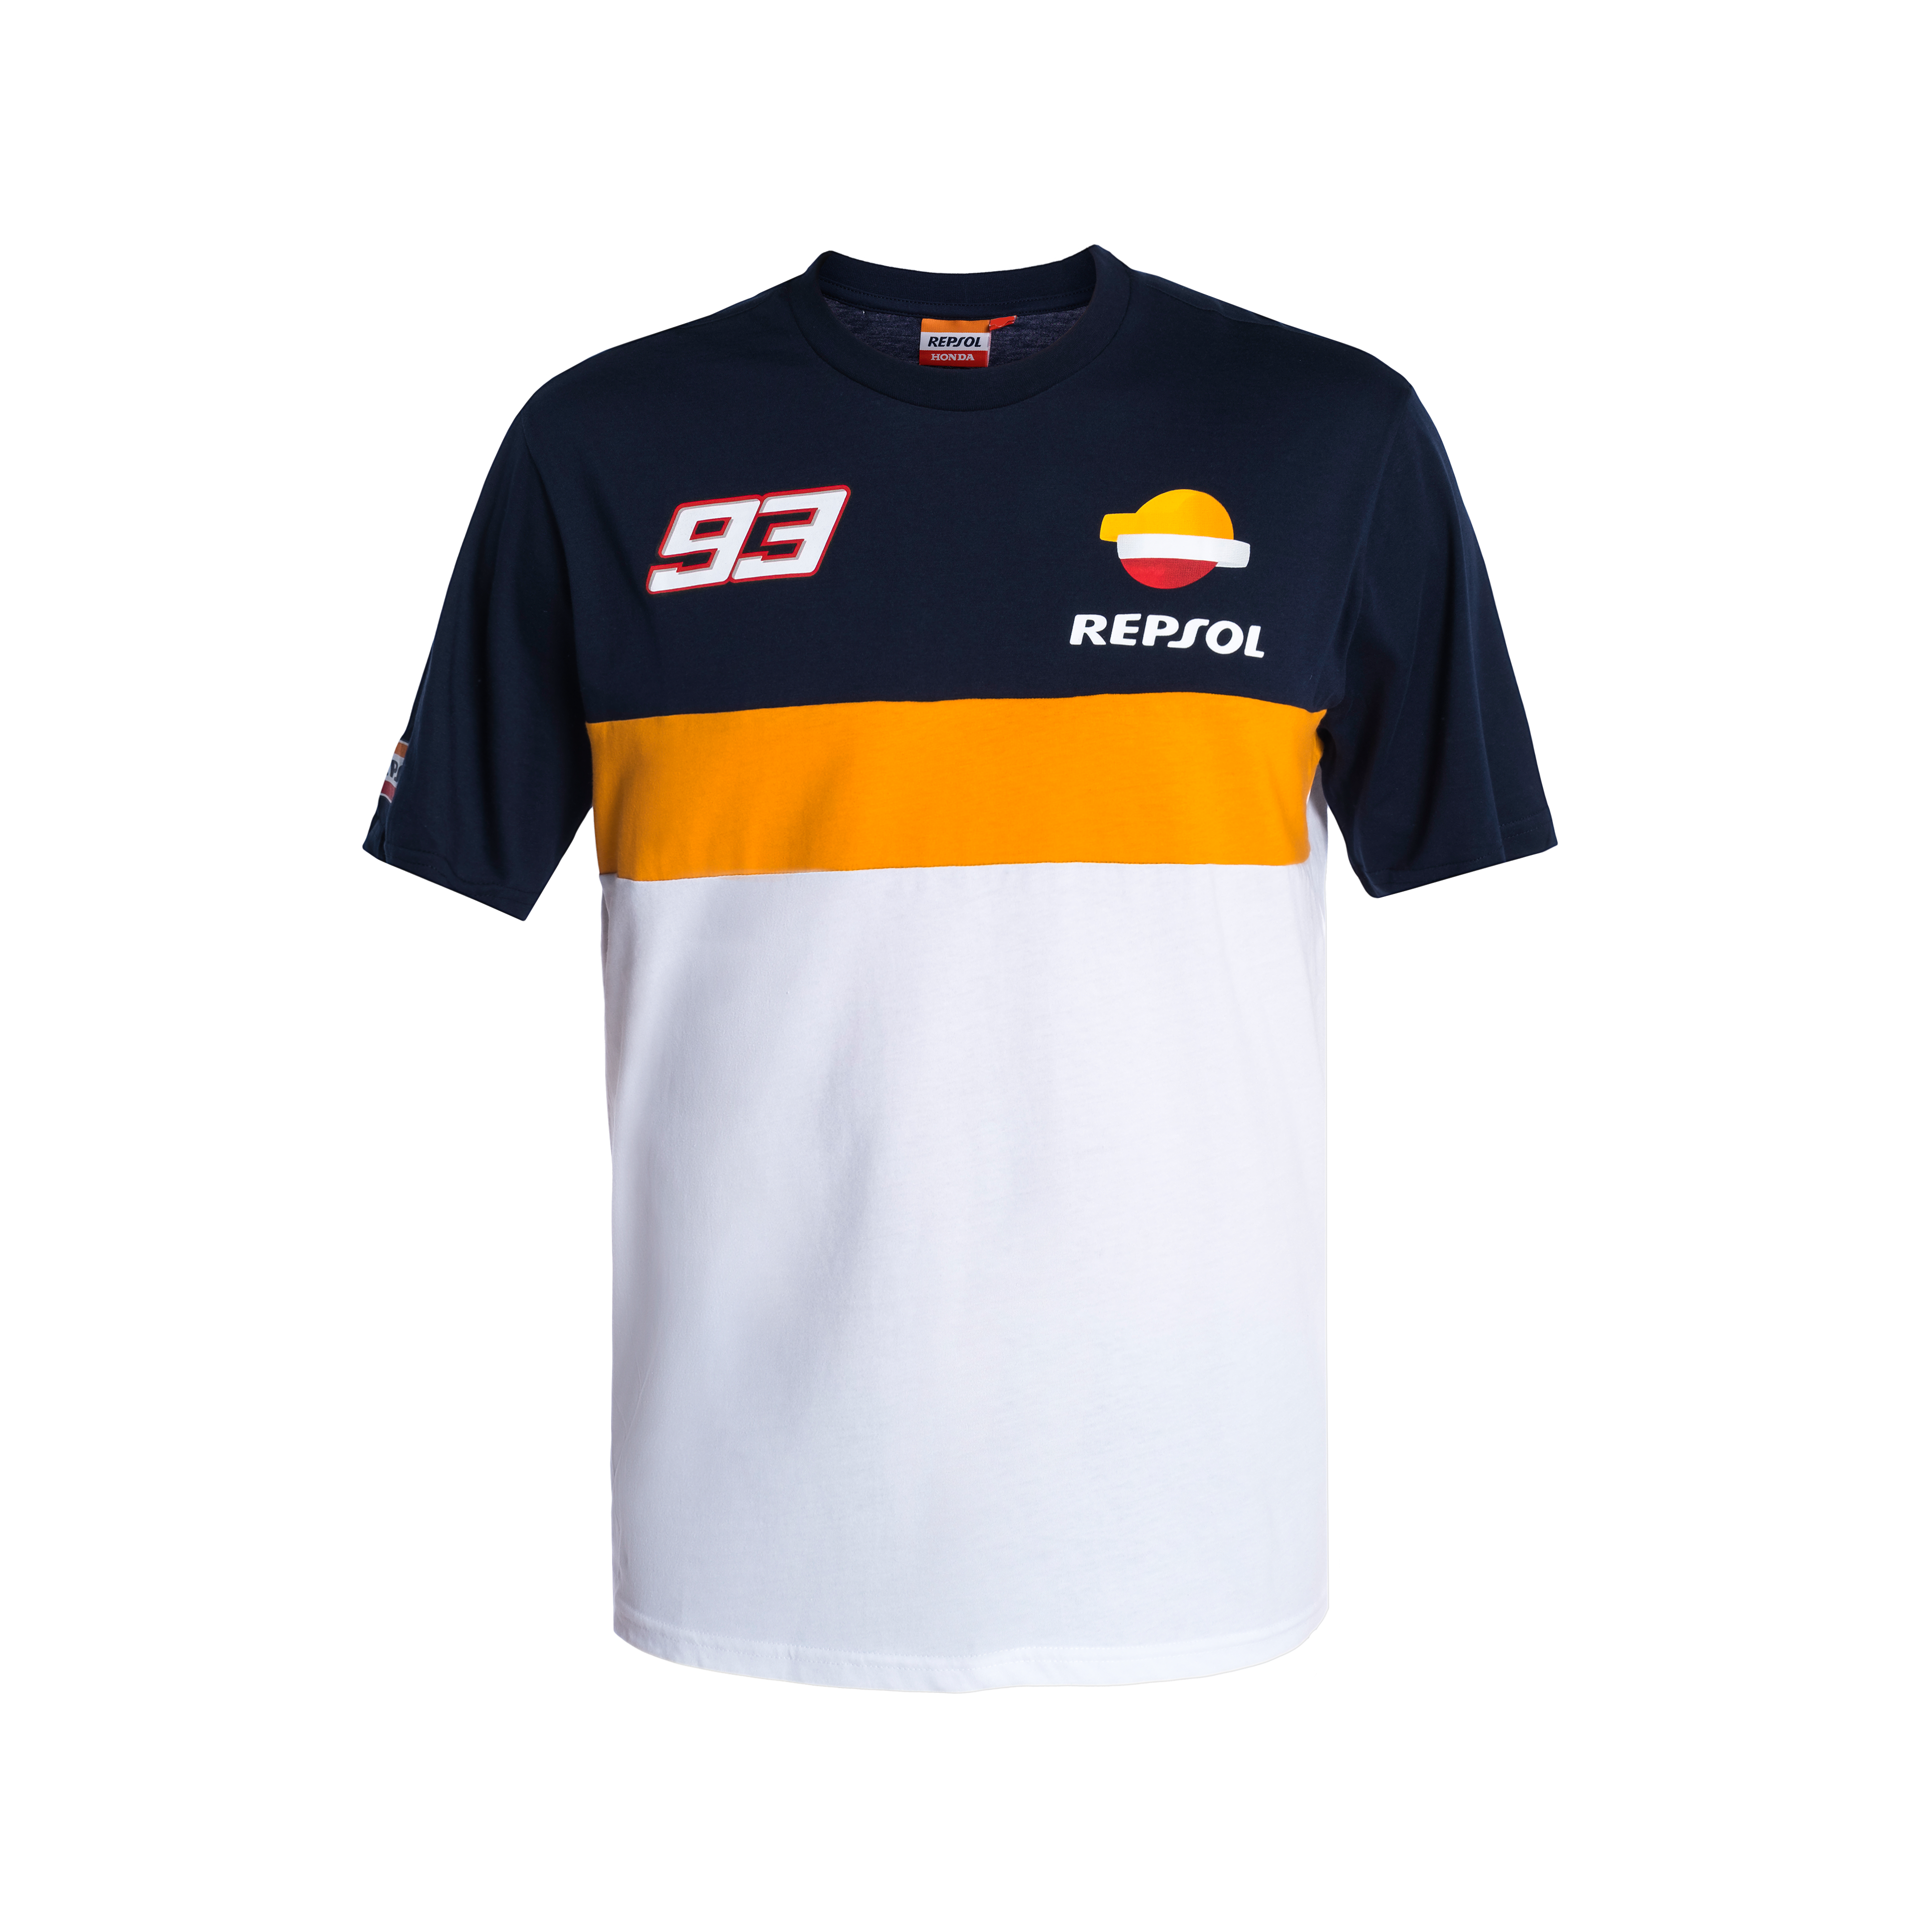 New Official Marc Marquez 93 Repsol Honda T'Shirt REMTS 793 06